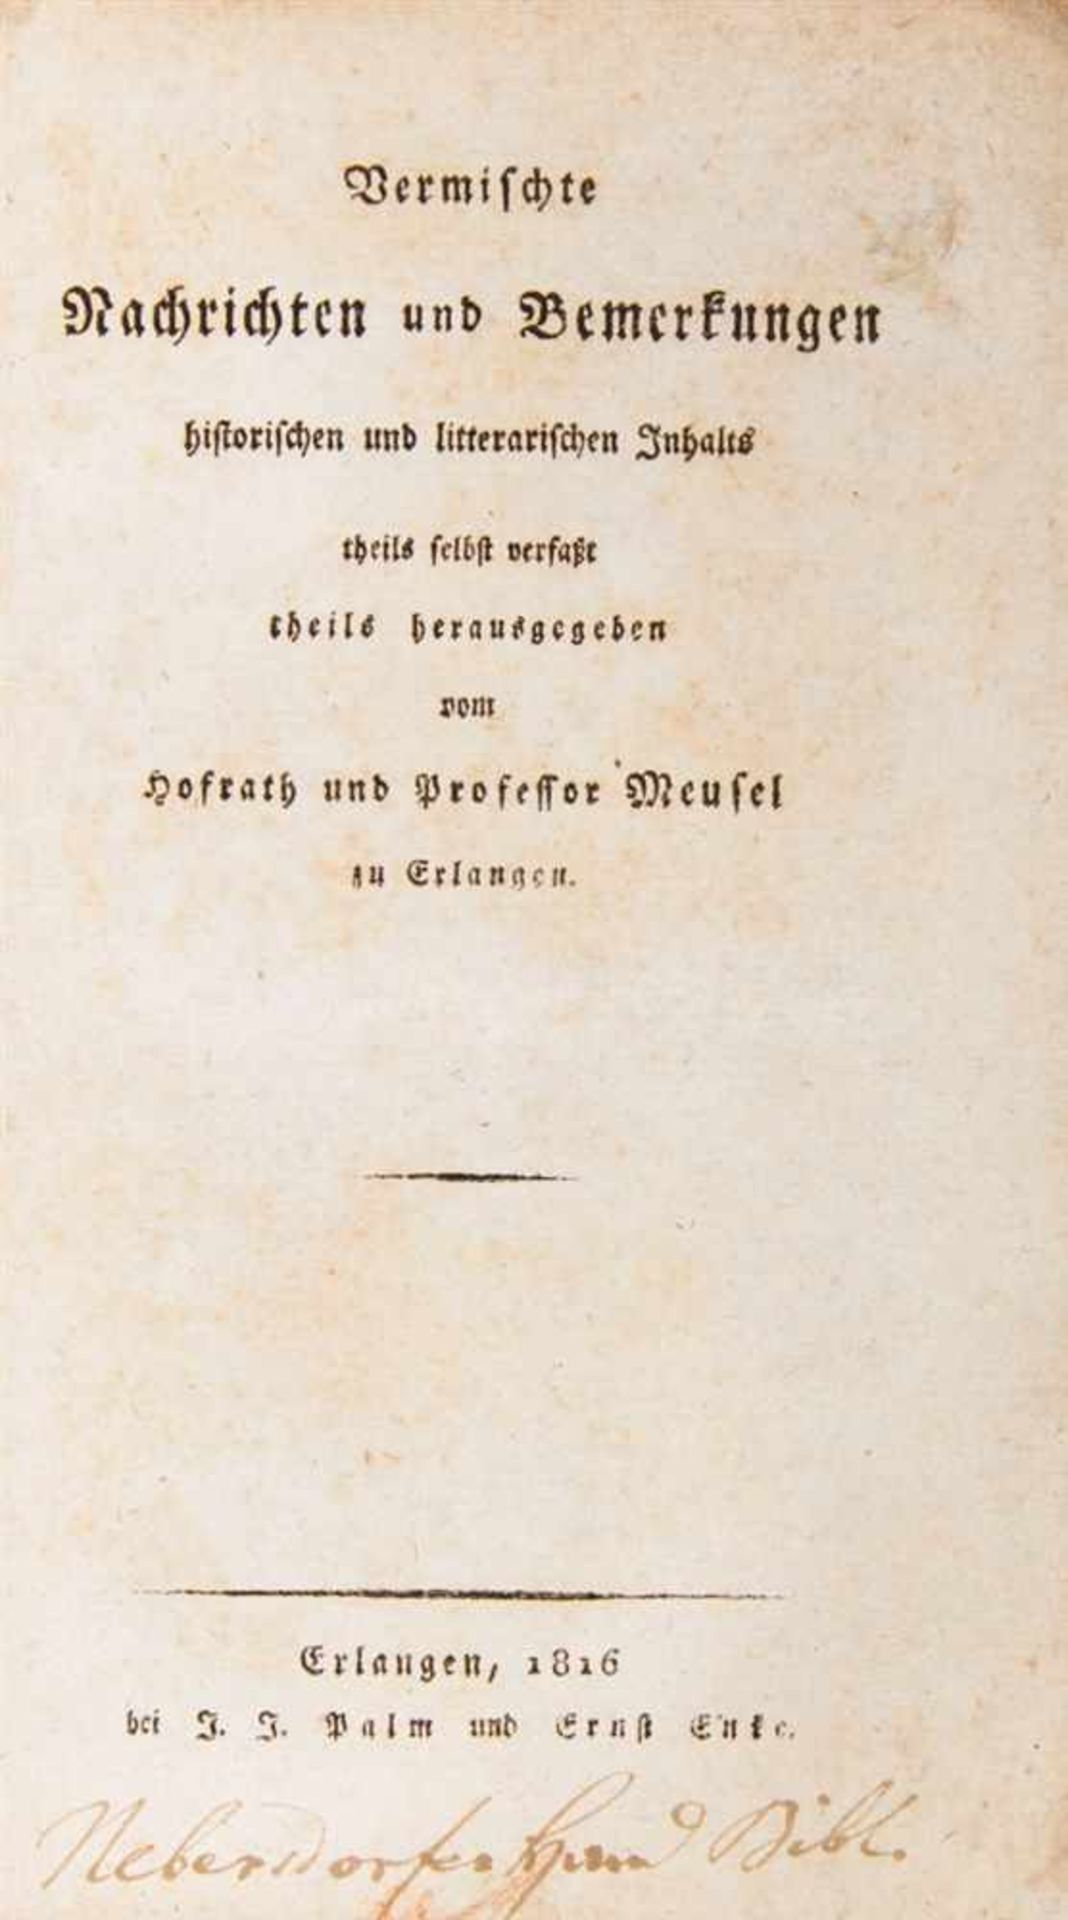 Meusel, Johann Georg: 2 Werke in 2 Bdn. Erlangen und Coburg 1816 - 1818. 19 x 11 cm. Marmorierter